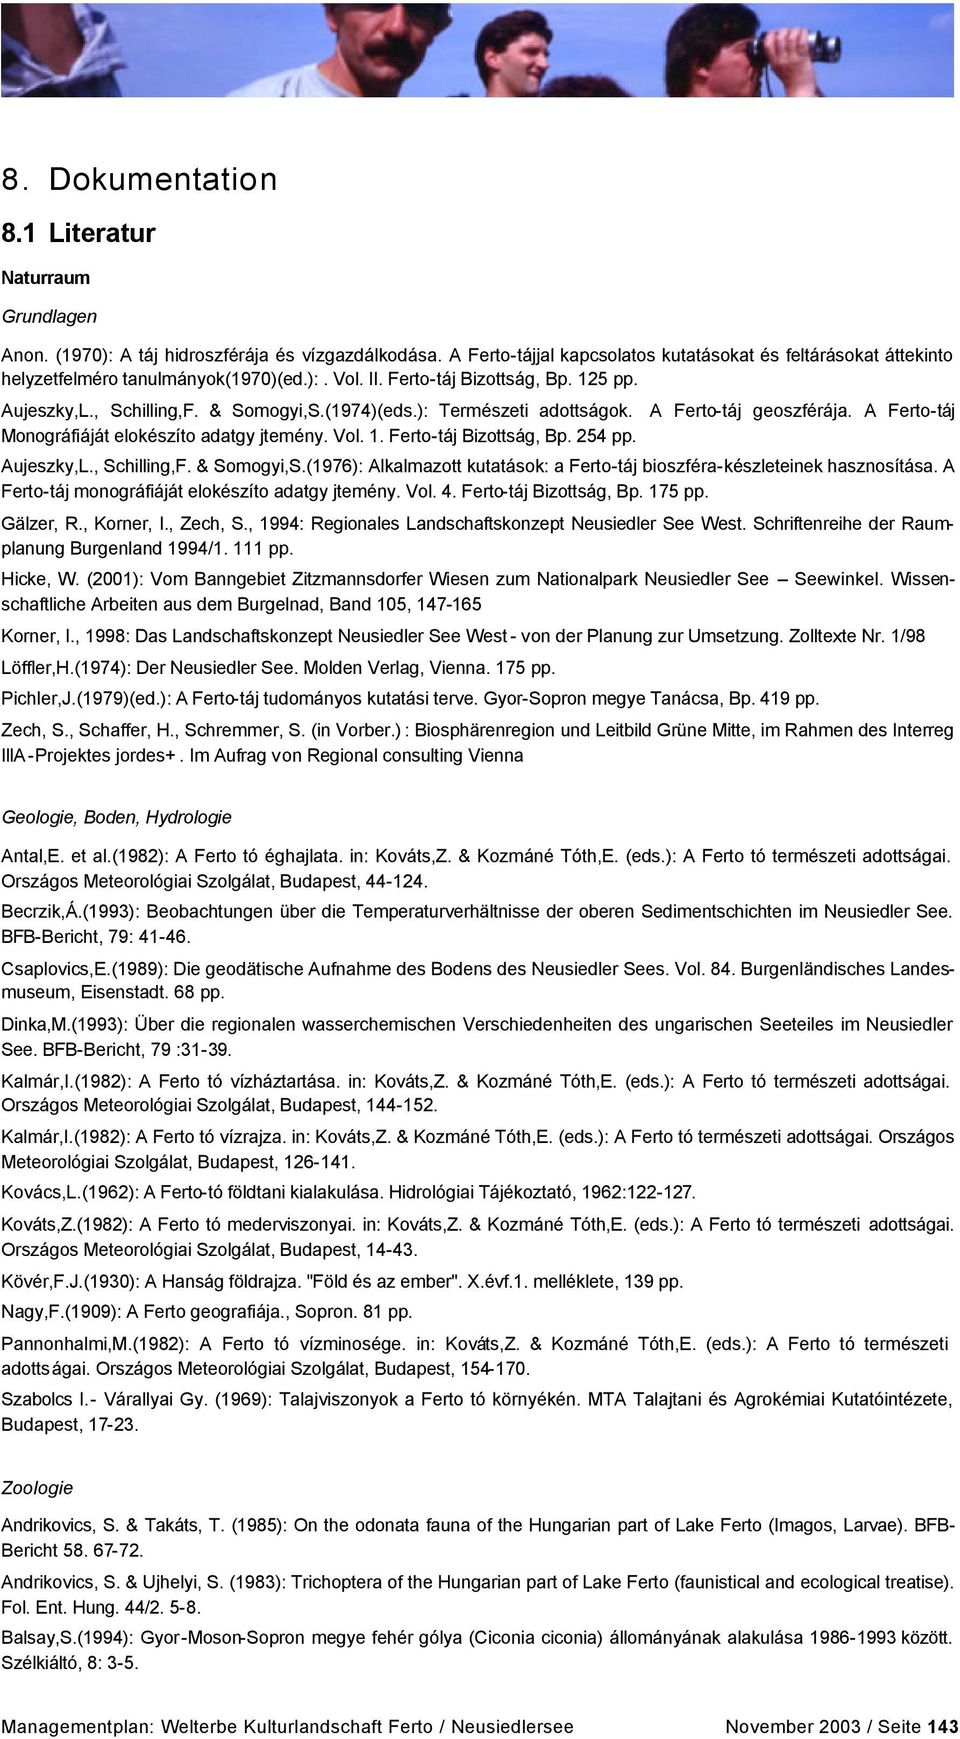 ): Természeti adottságok. A Ferto-táj geoszférája. A Ferto-táj Monográfiáját elokészíto adatgy jtemény. Vol. 1. Ferto-táj Bizottság, Bp. 254 pp. Aujeszky,L., Schilling,F. & Somogyi,S.